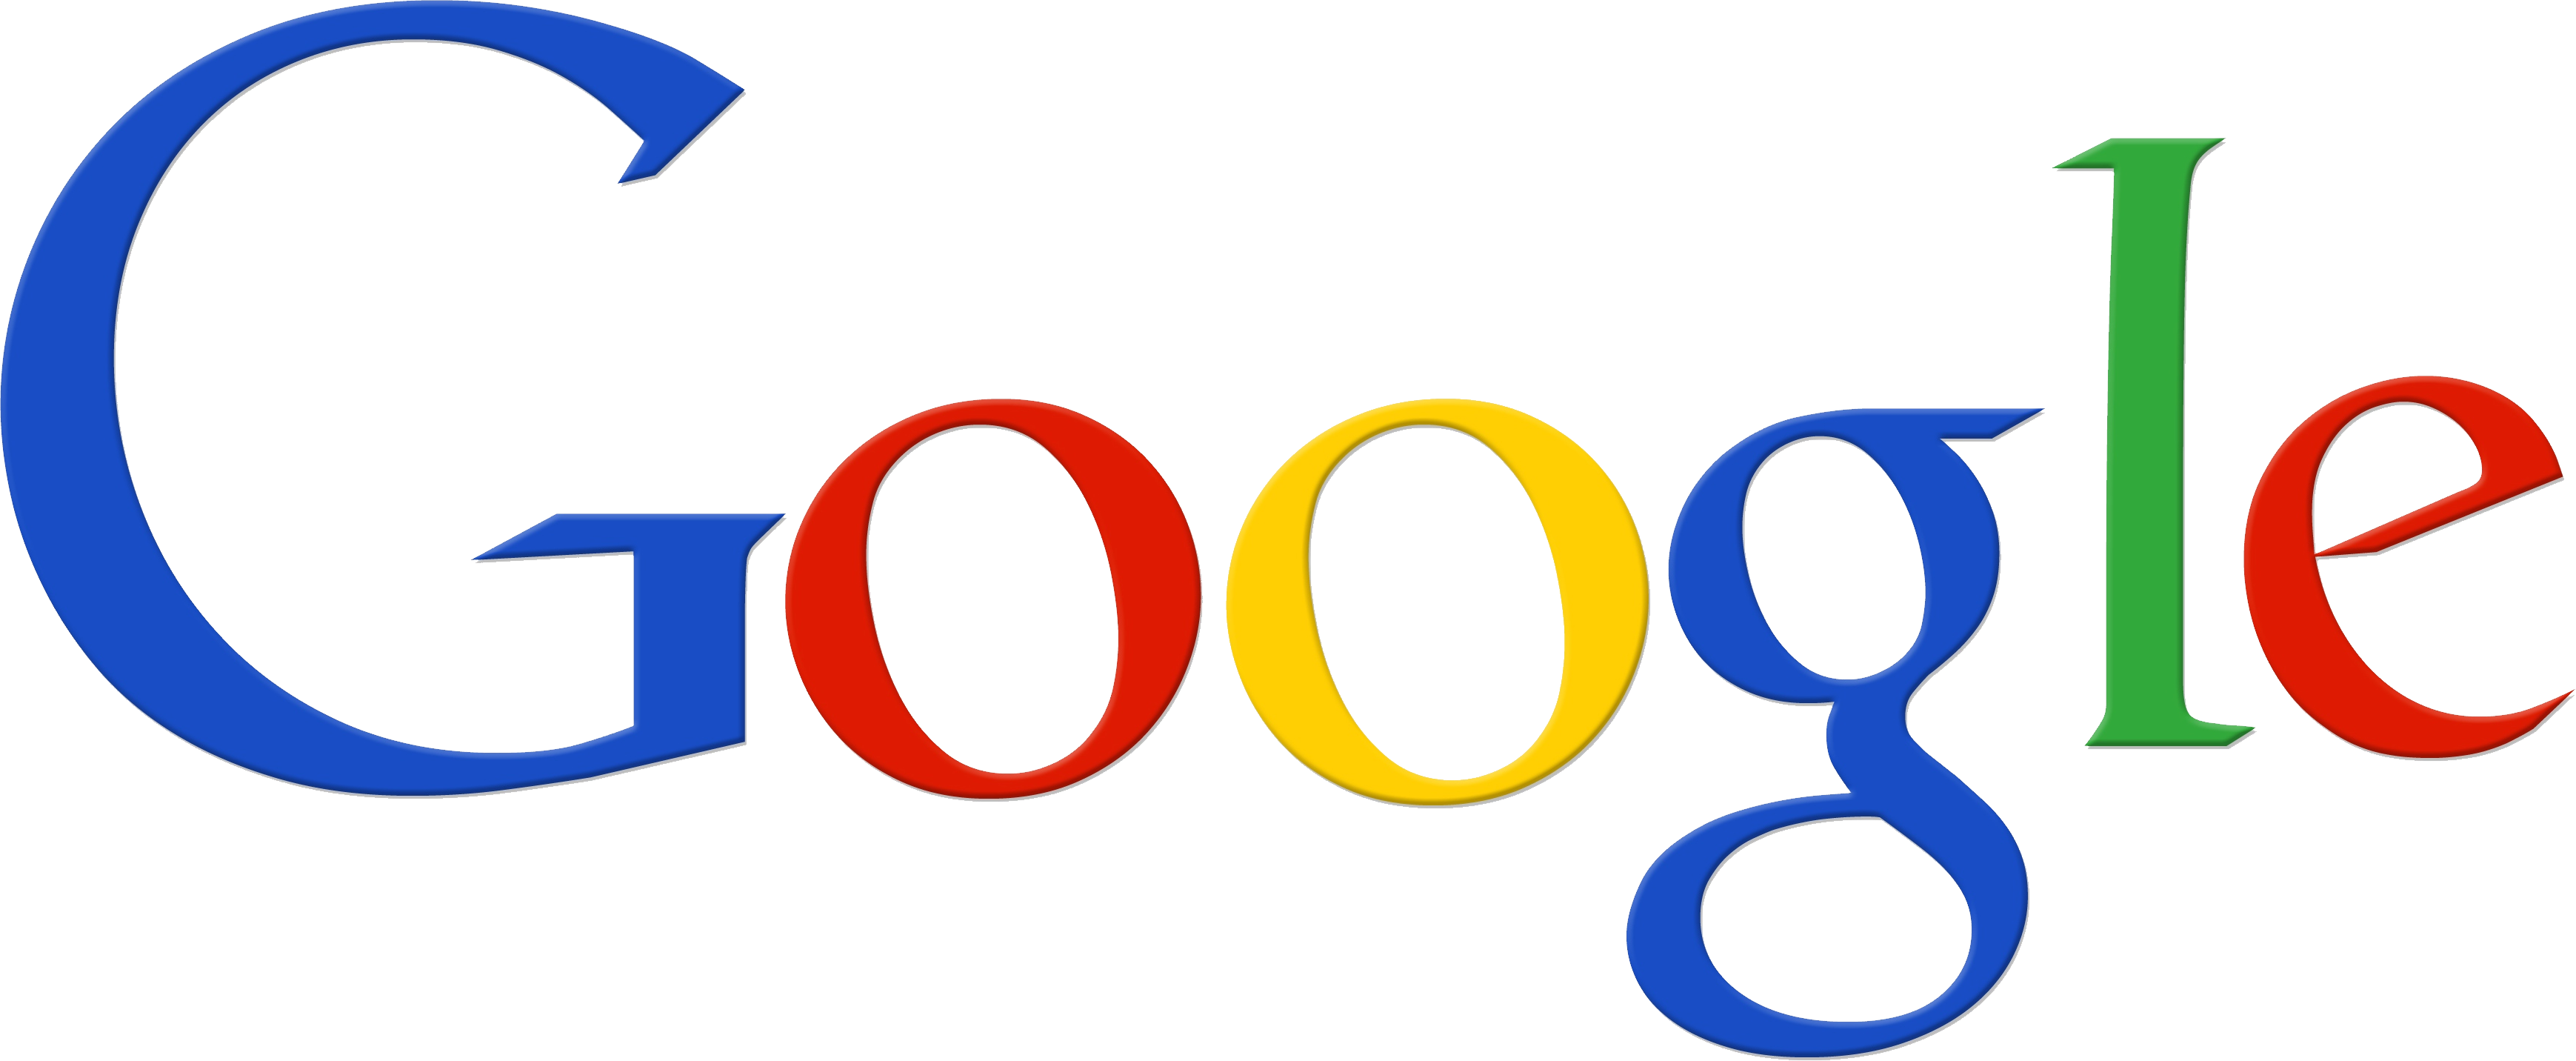 Google Logo Free PNG Image